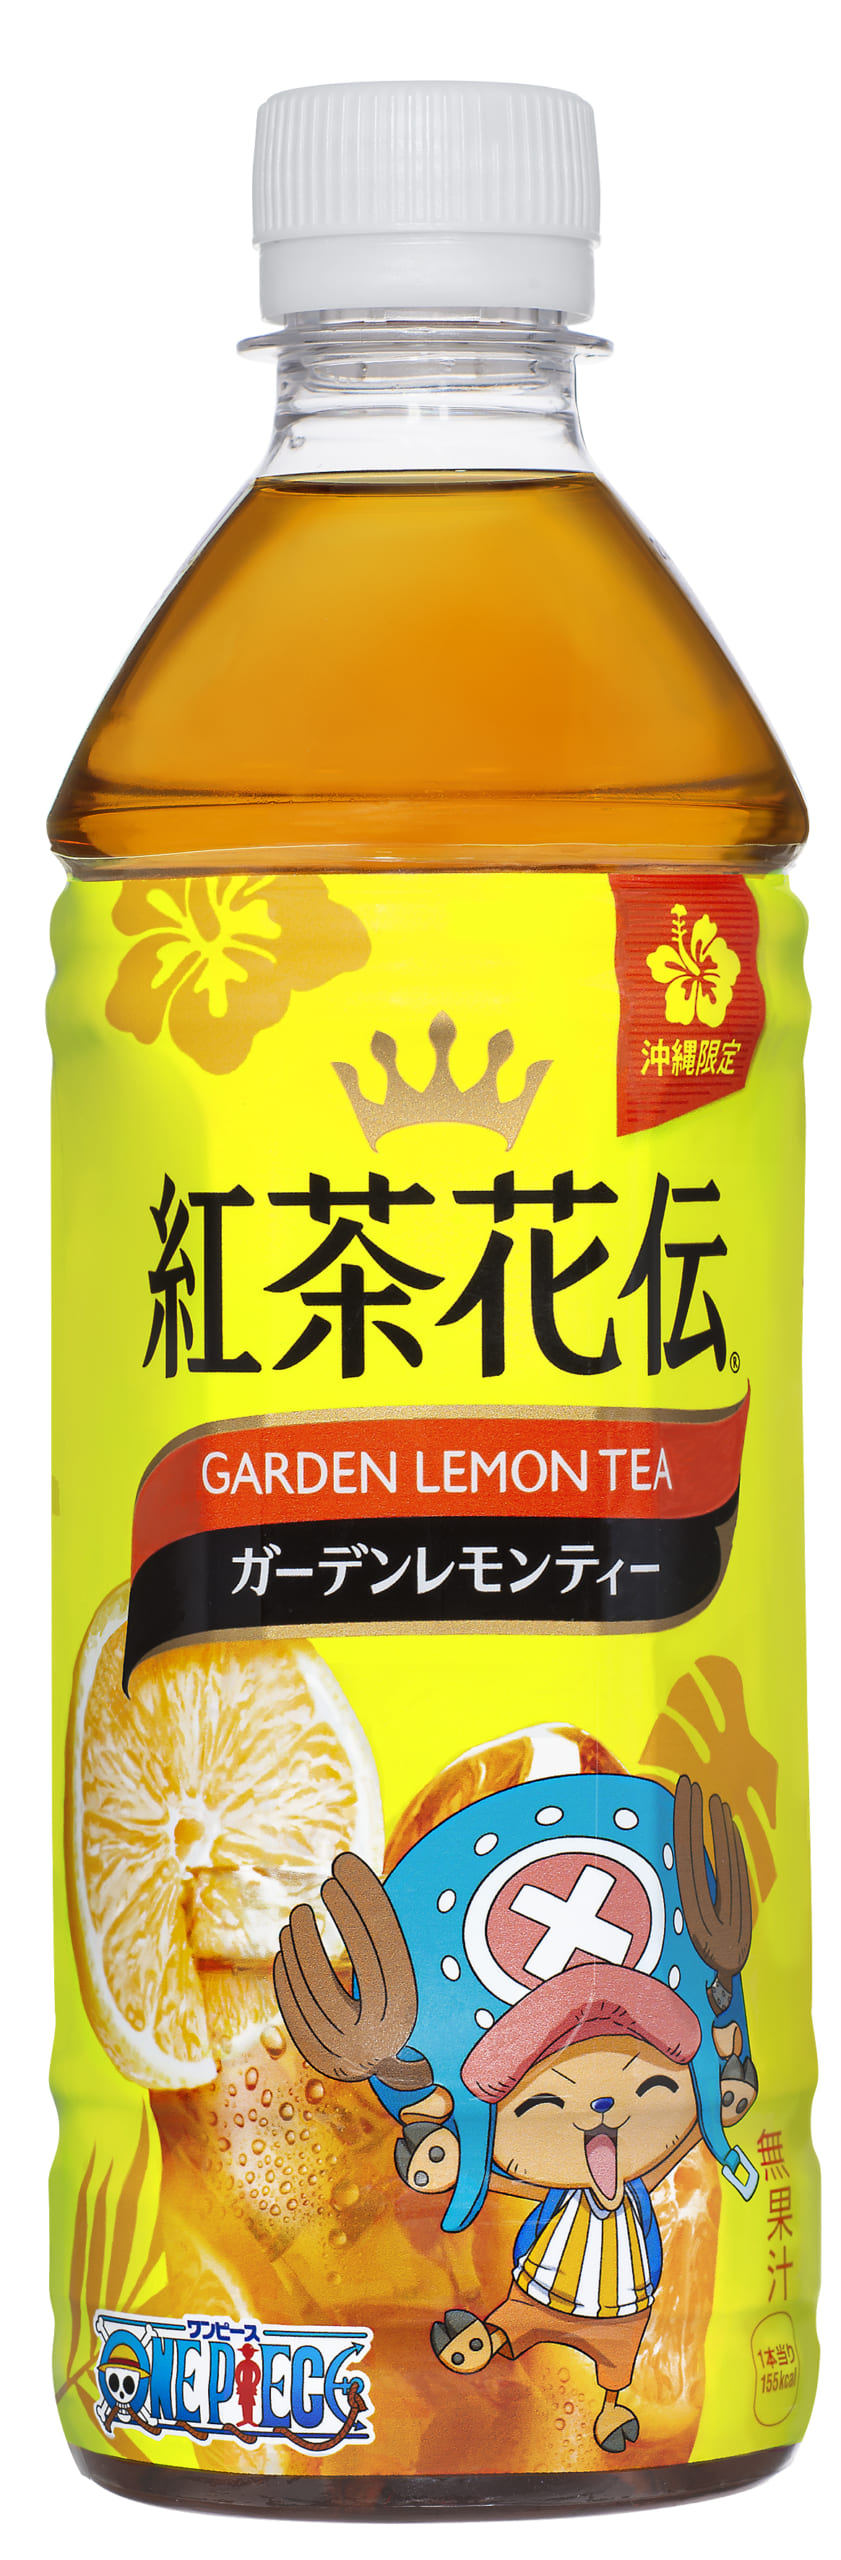 「紅茶花伝 ガーデンレモンティー」※沖縄限定販売 